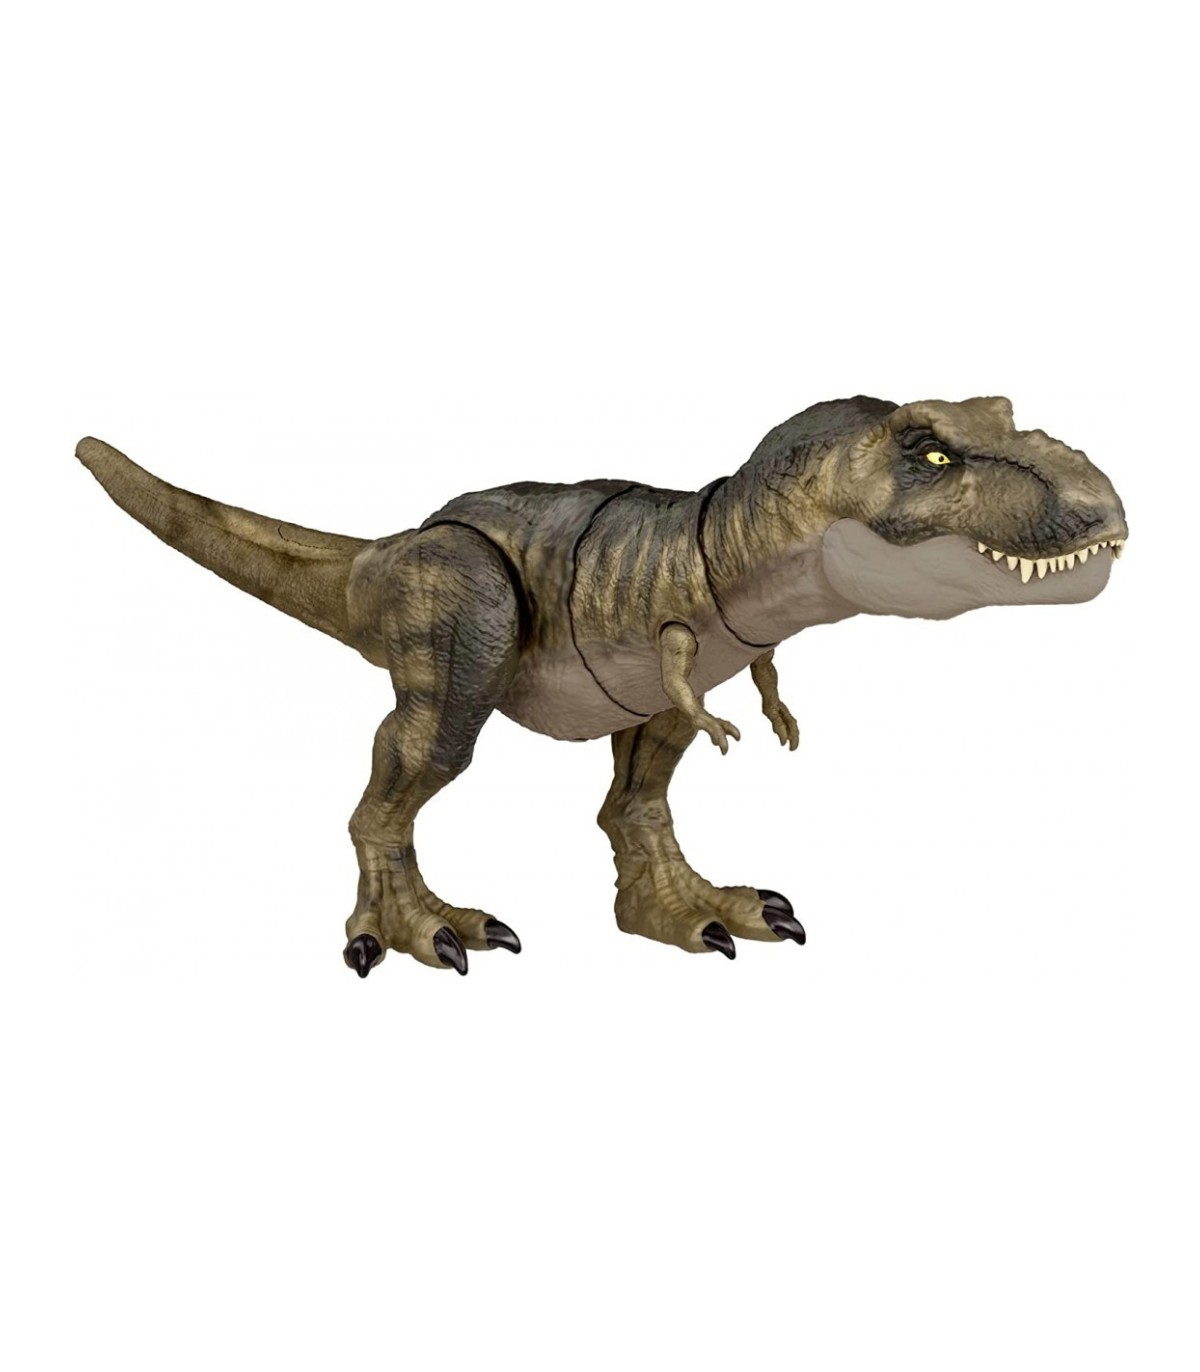 Compra ya tu Jurassic World Dinosaurio Articulado TRex Golpea Y Devora con  Sonido por solo 54,99 €